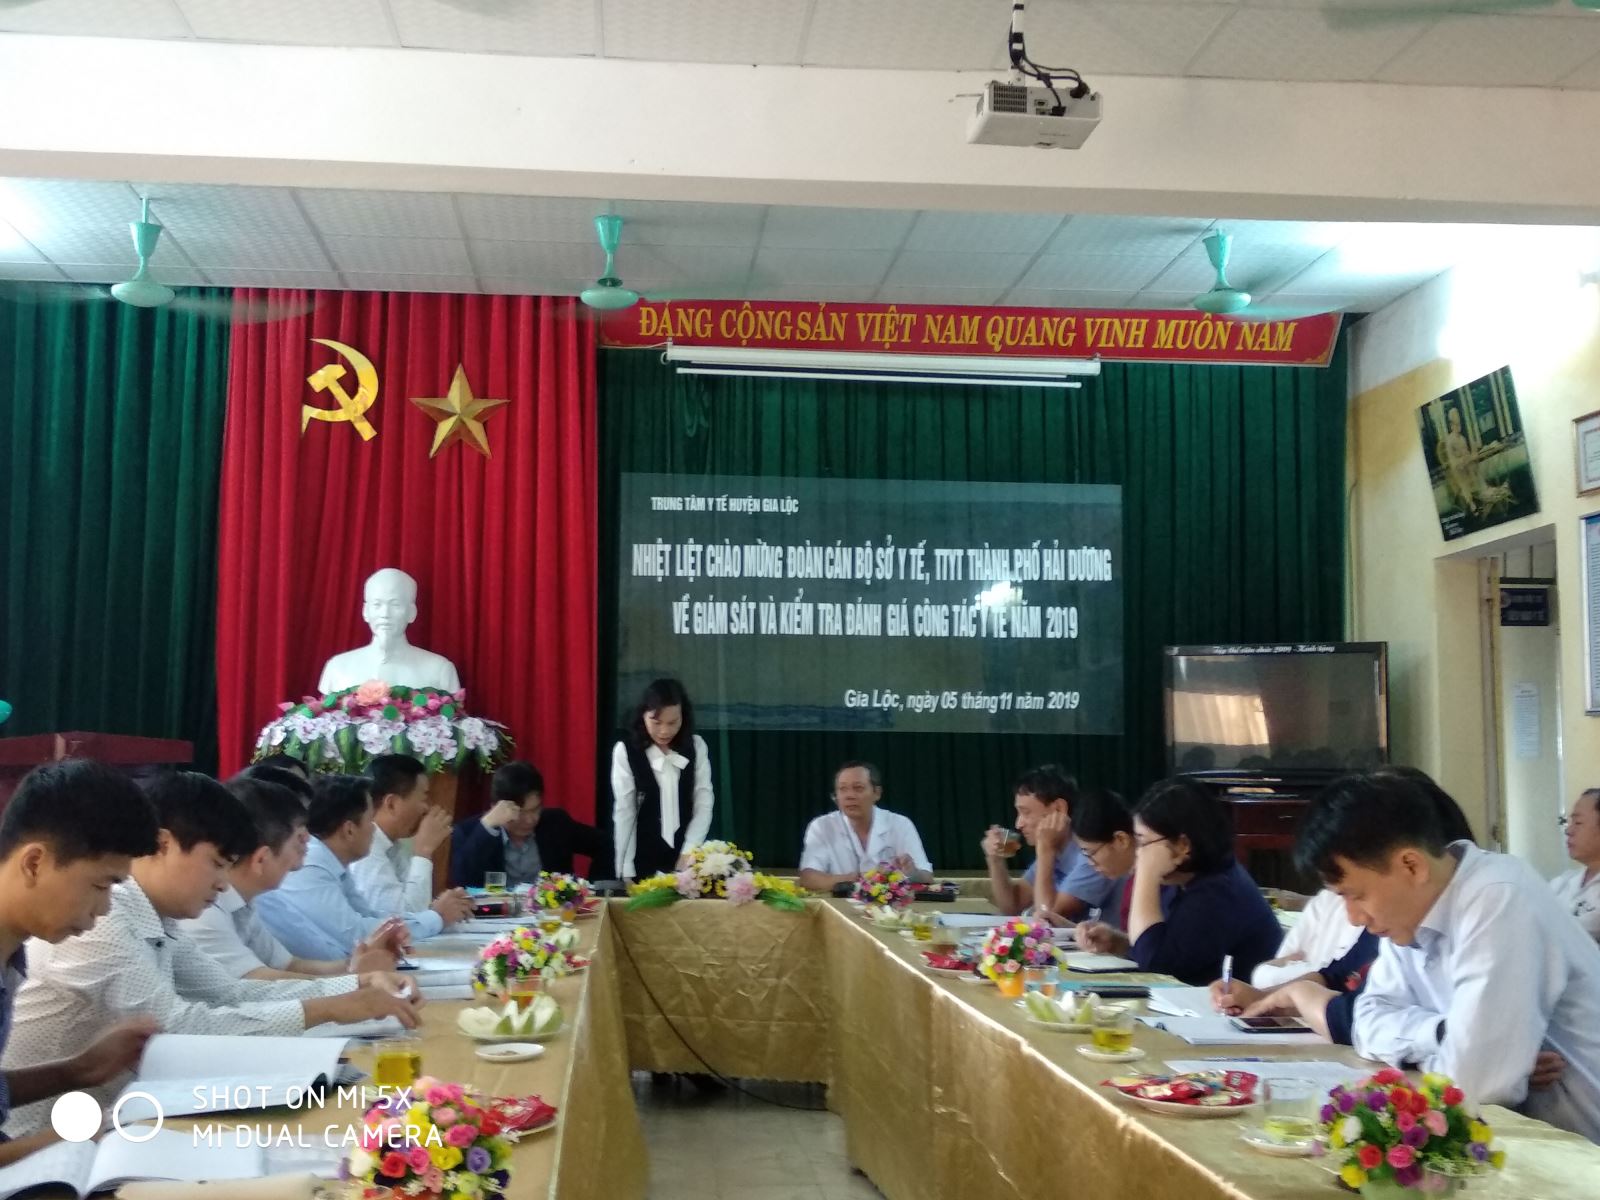 Kiểm tra, đánh giá chất lượng bệnh viện cuối năm 2019 tại Trung tâm y tế huyện Gia Lộc